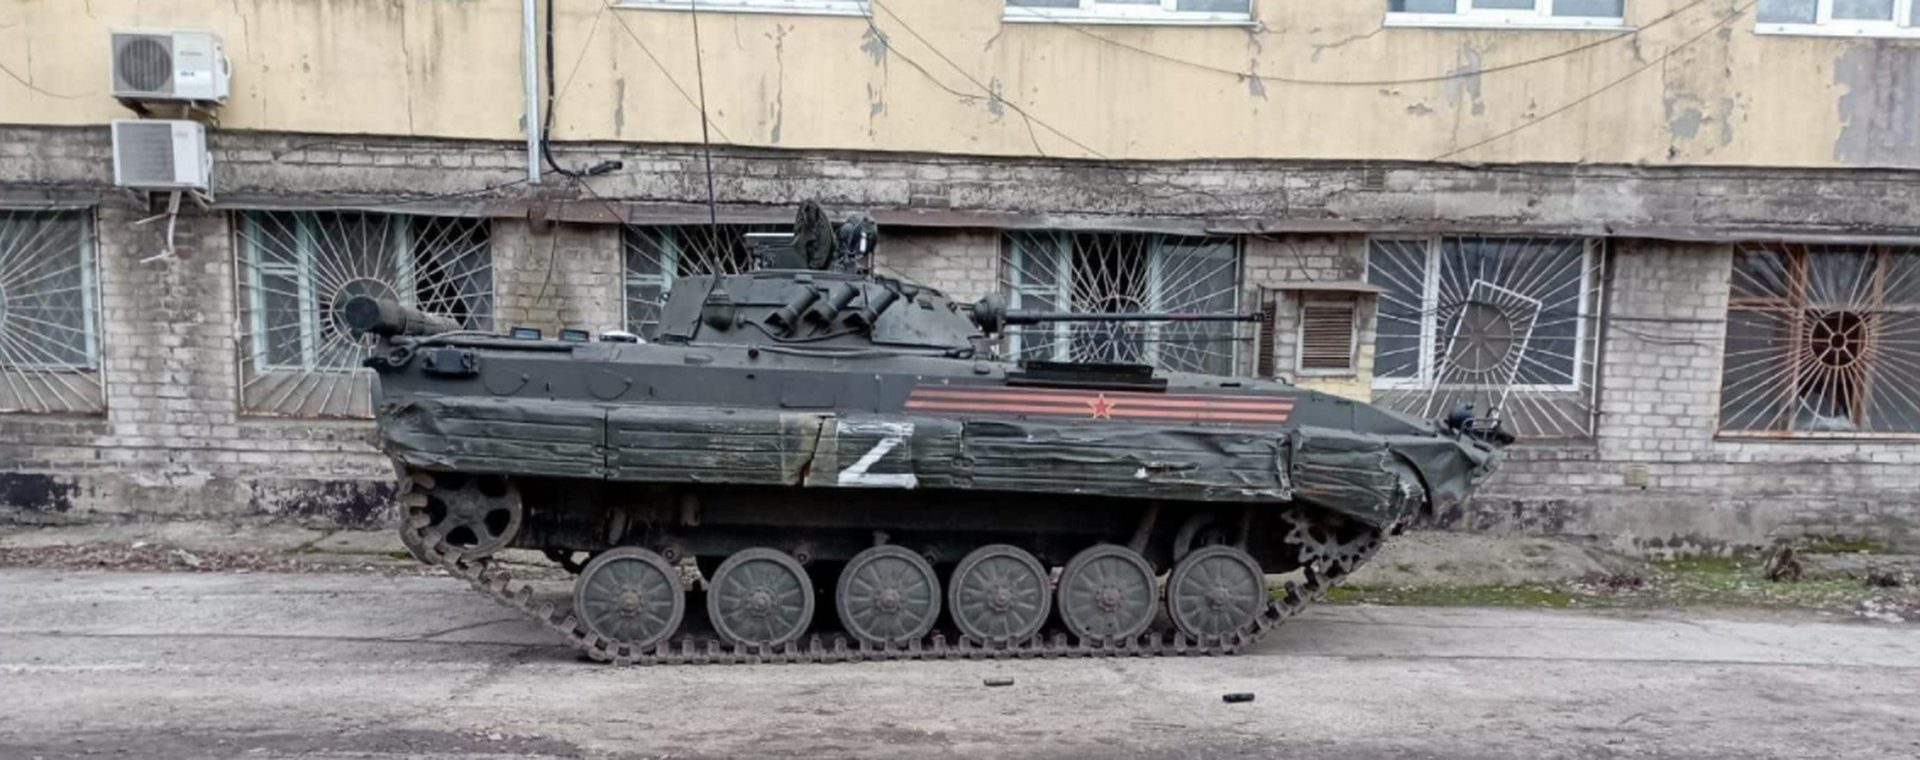 Rosjanie używają zaskakująco starego sprzętu podczas inwazji na Ukrainę. "Taka właśnie jest ta armia" – tłumaczy jednak gen. Koziej.